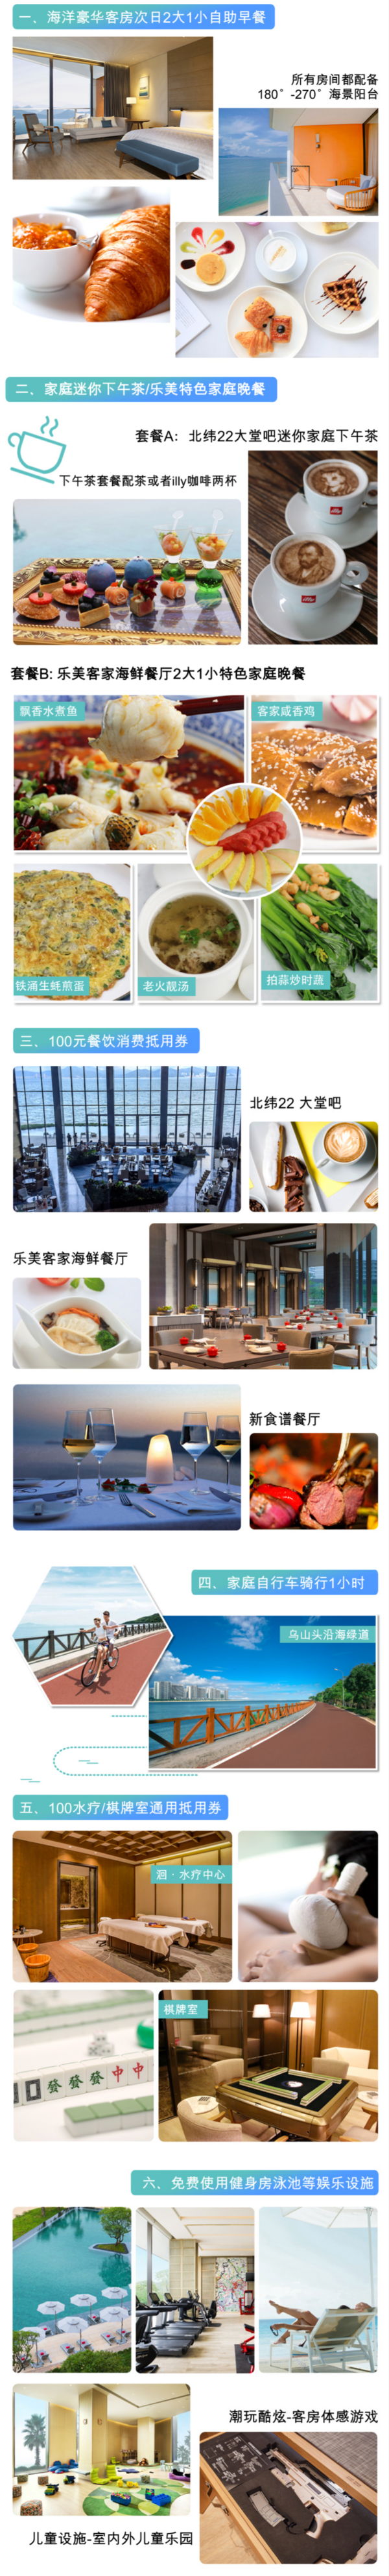 惠州小径湾艾美酒店1晚 海洋豪华房+早餐+下午茶/晚餐+亲子玩乐